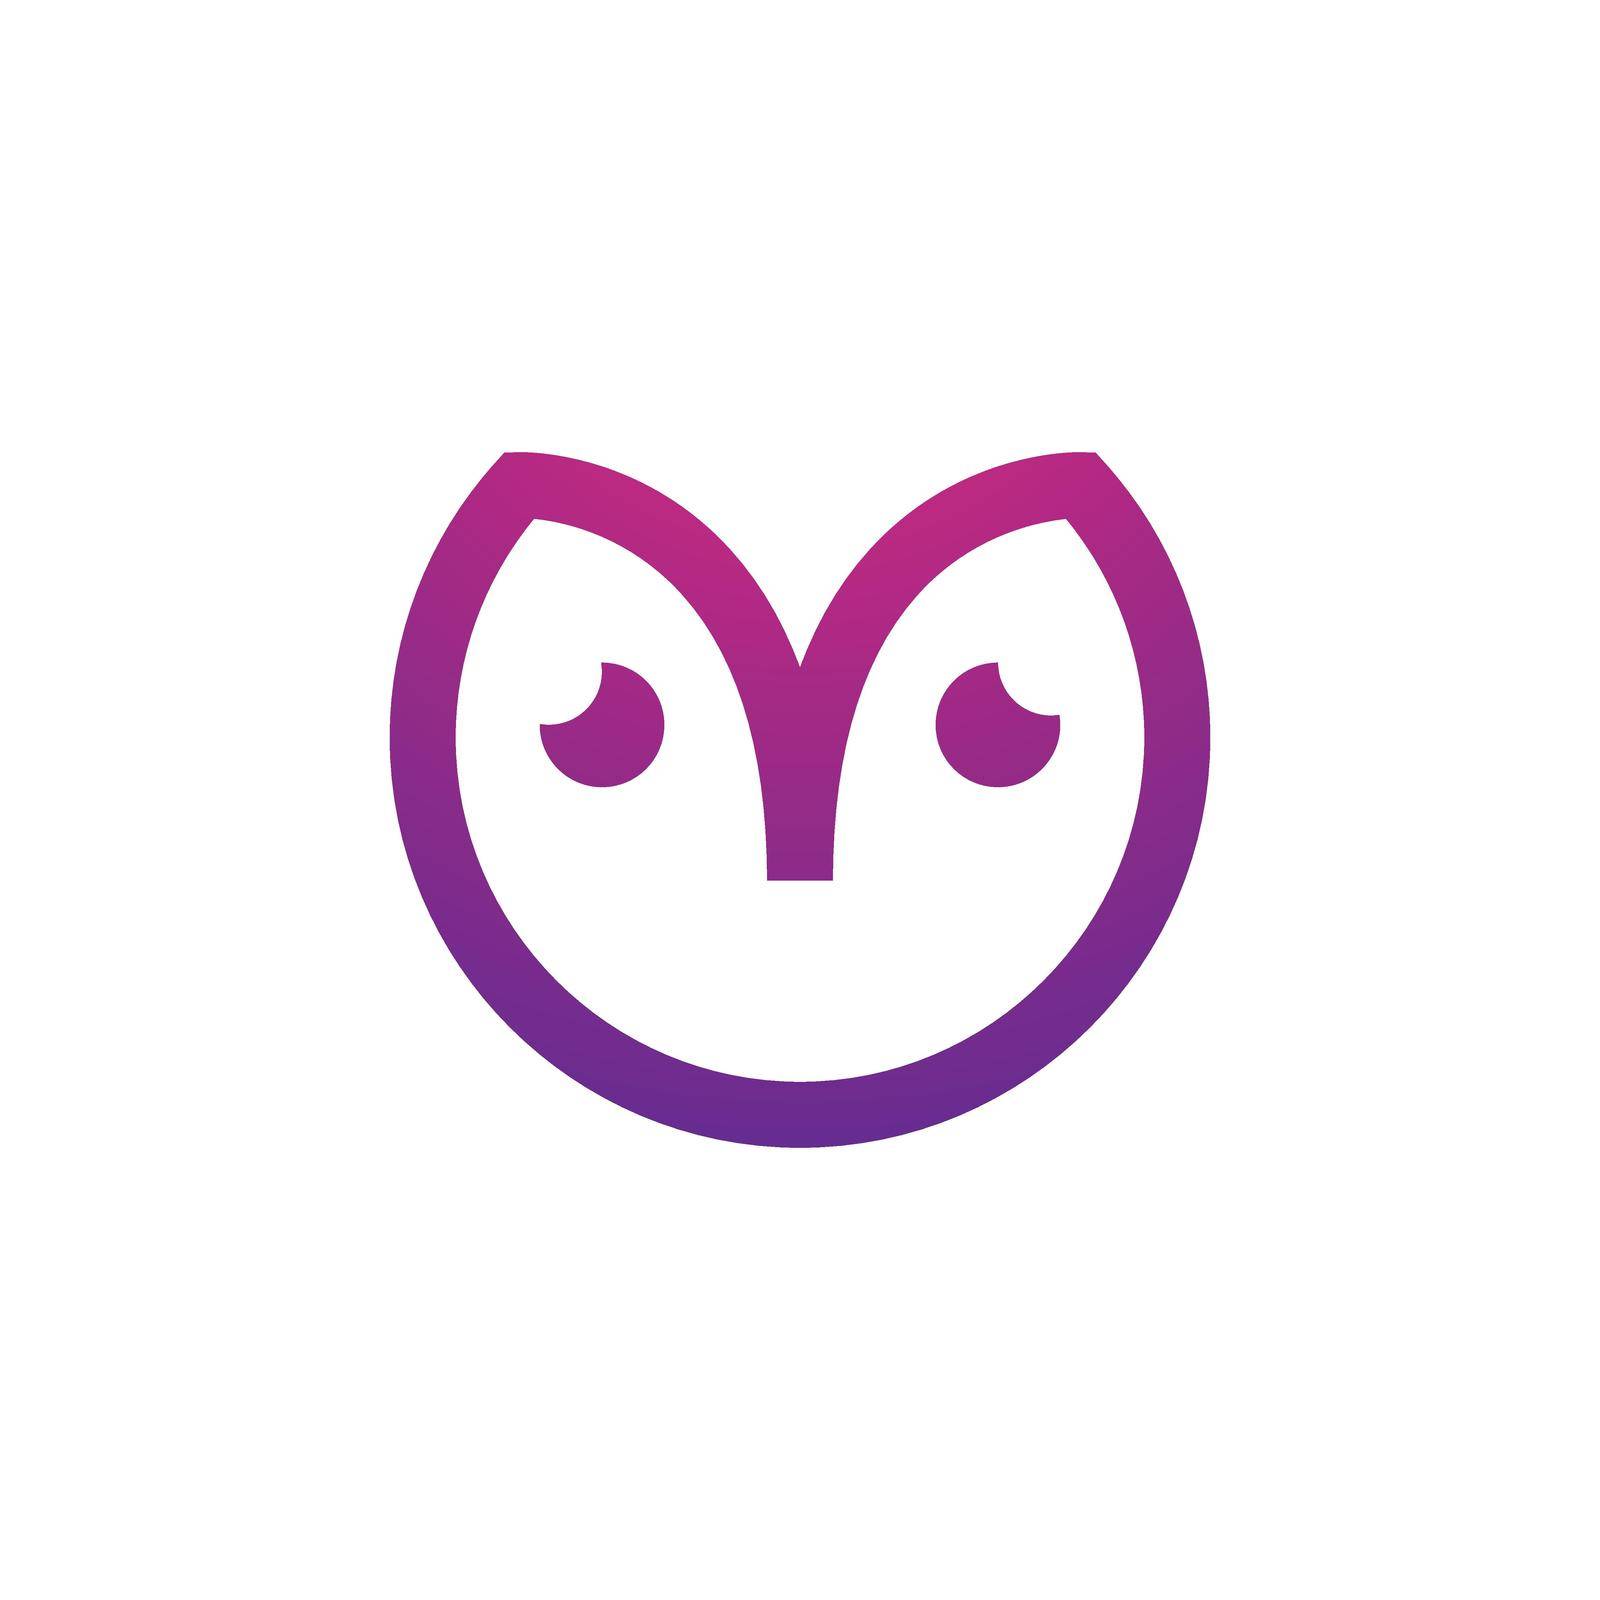 Owl logo vector icon by awk